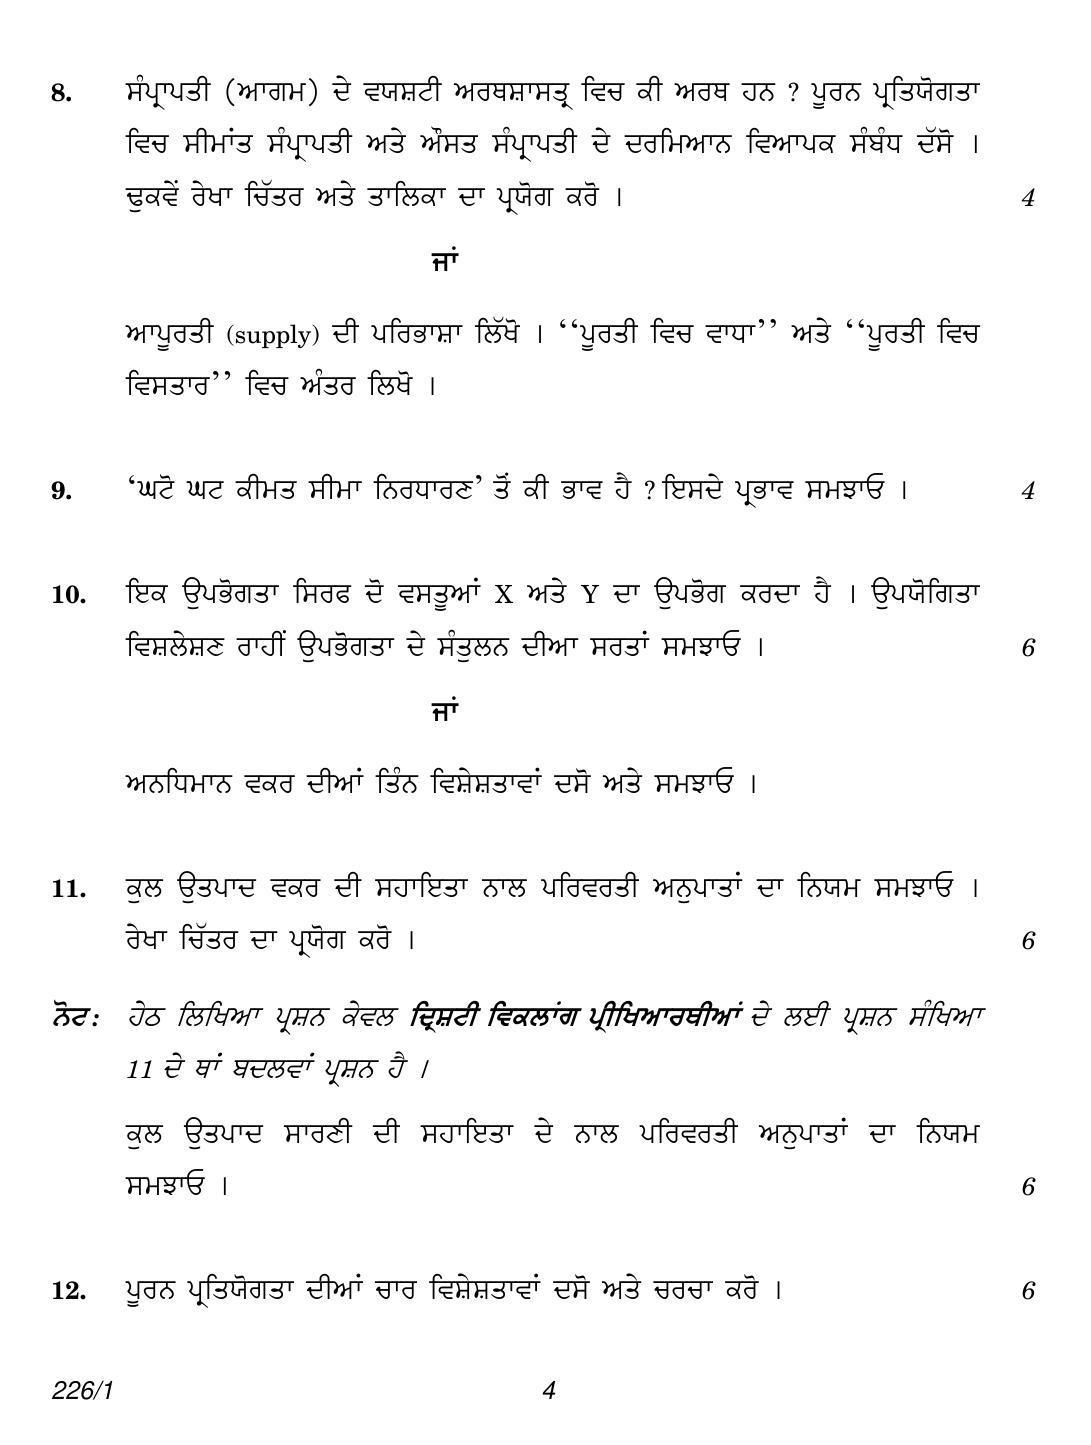 CBSE Class 12 226-1 (Economics Punjabi) 2018 Question Paper - Page 4